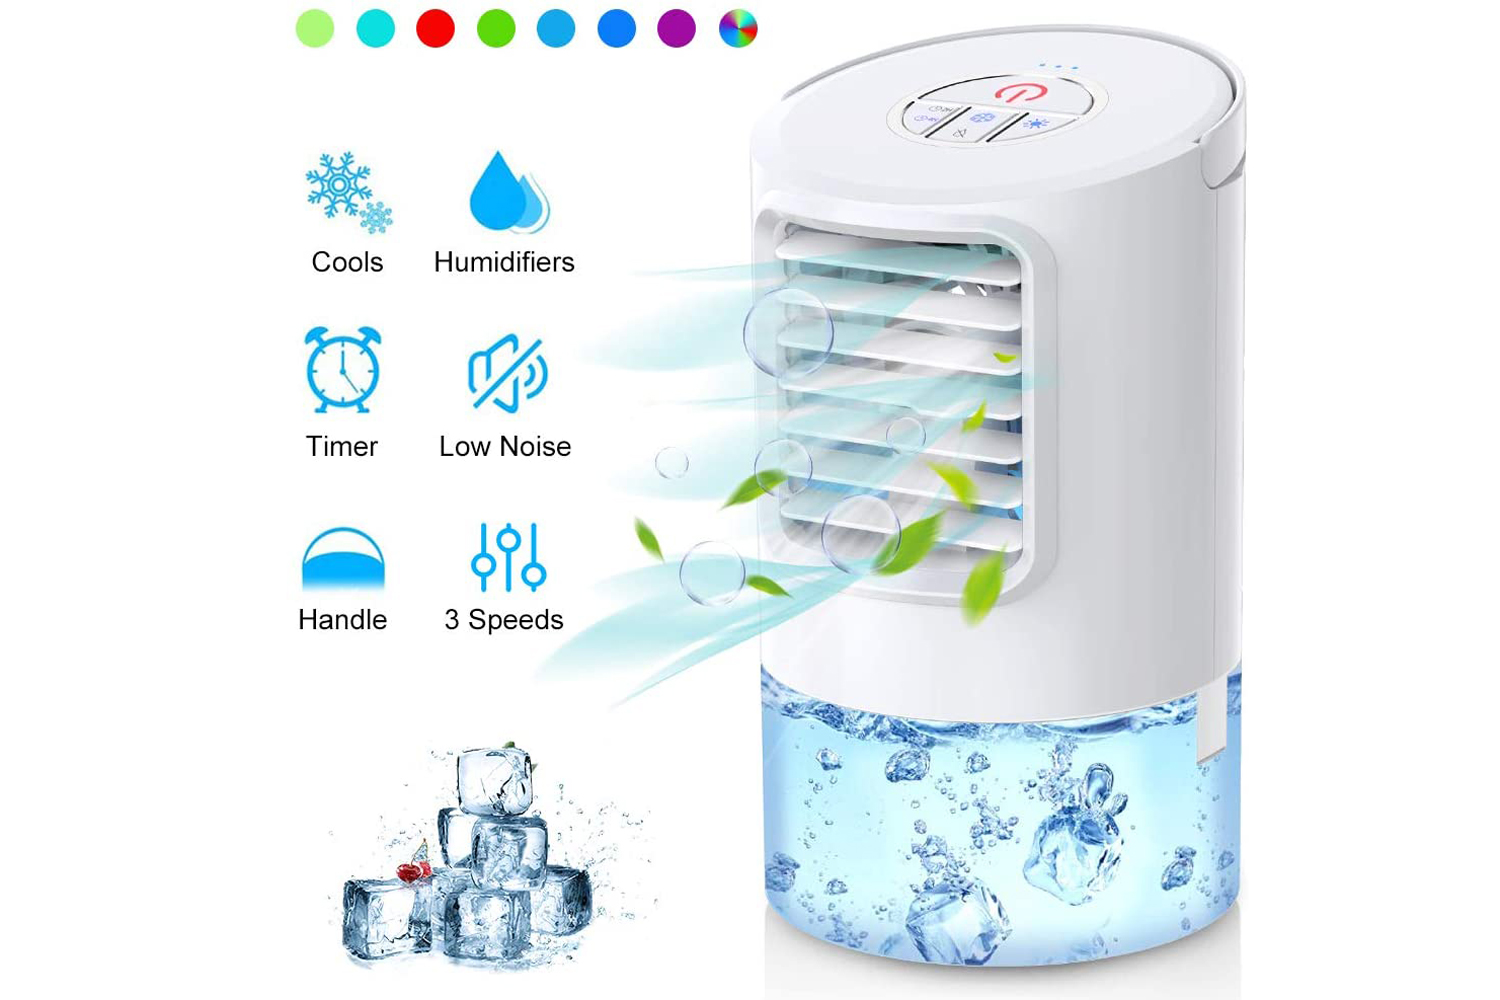 
                                    
                                Refrigeratori a evaporazione: i migliori per stare al fresco in casa